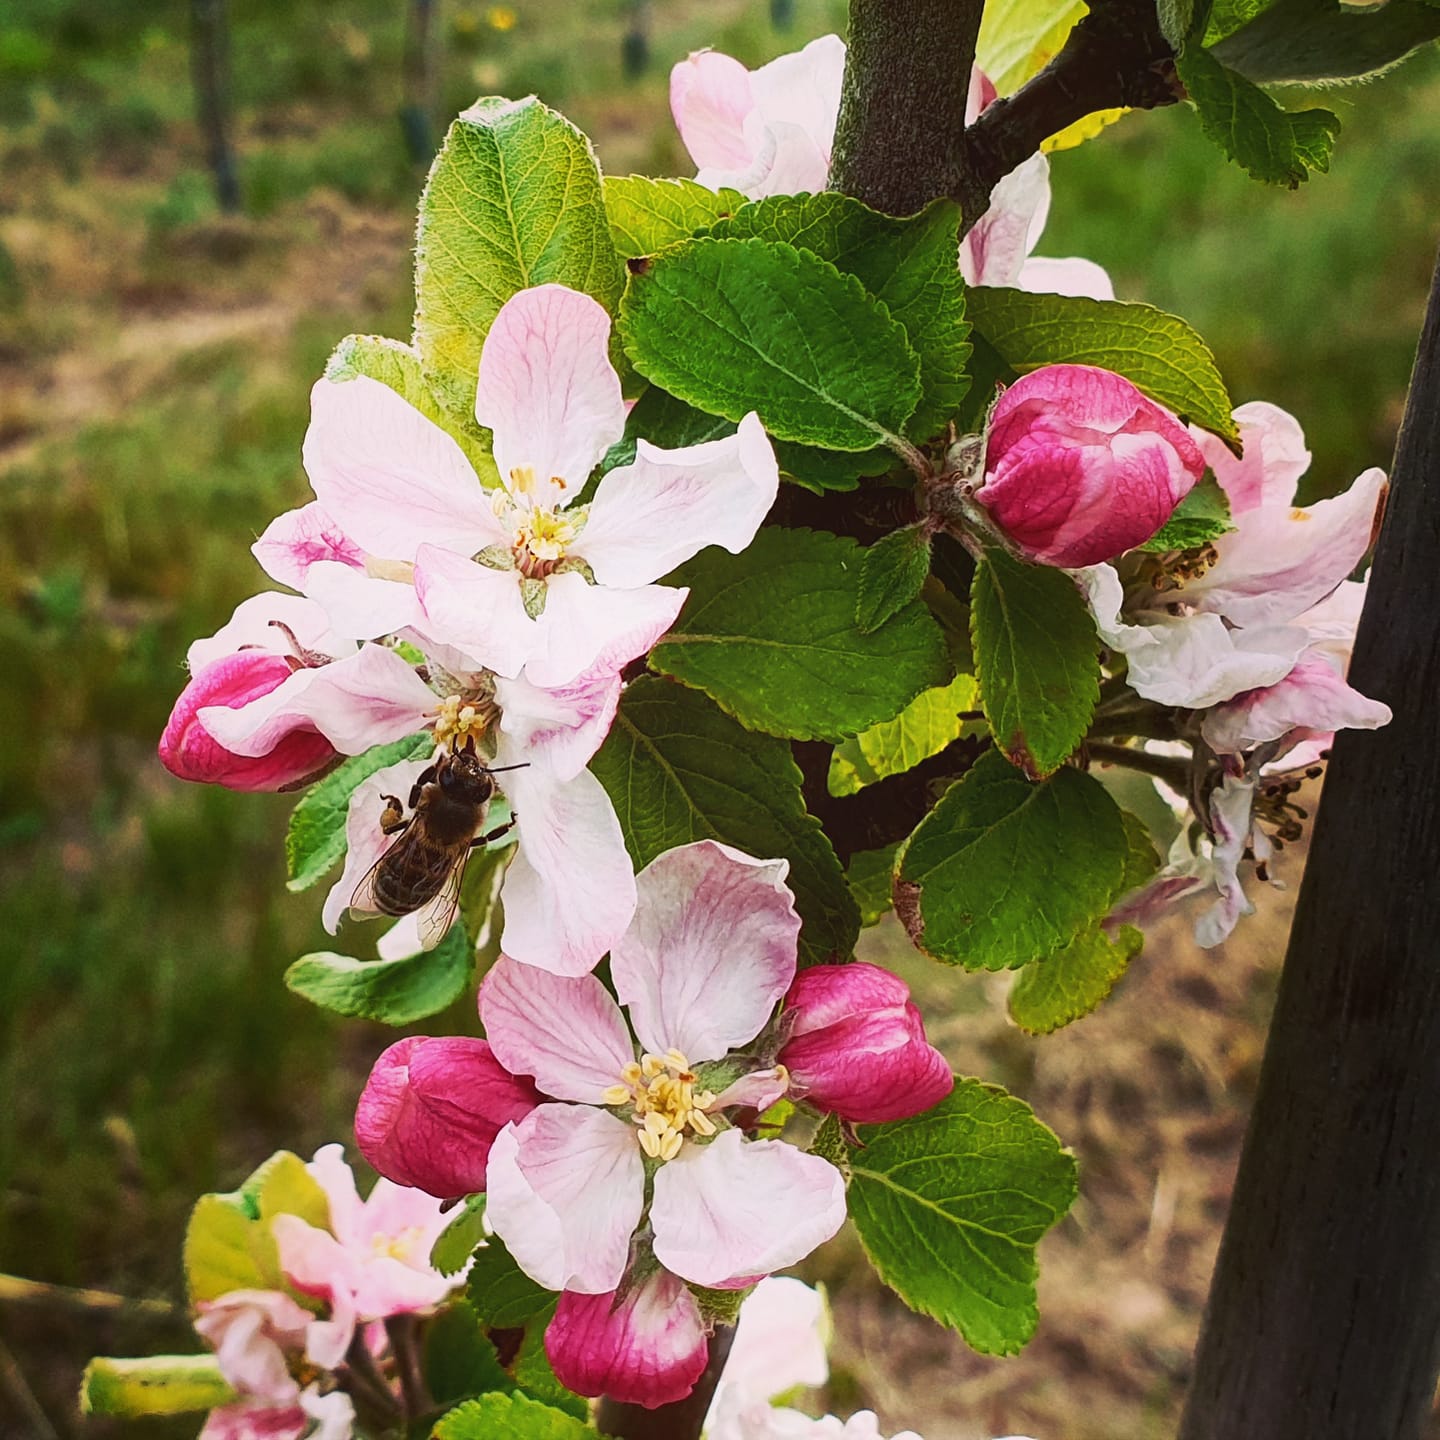 Æbleblomster med bi der suger nektar